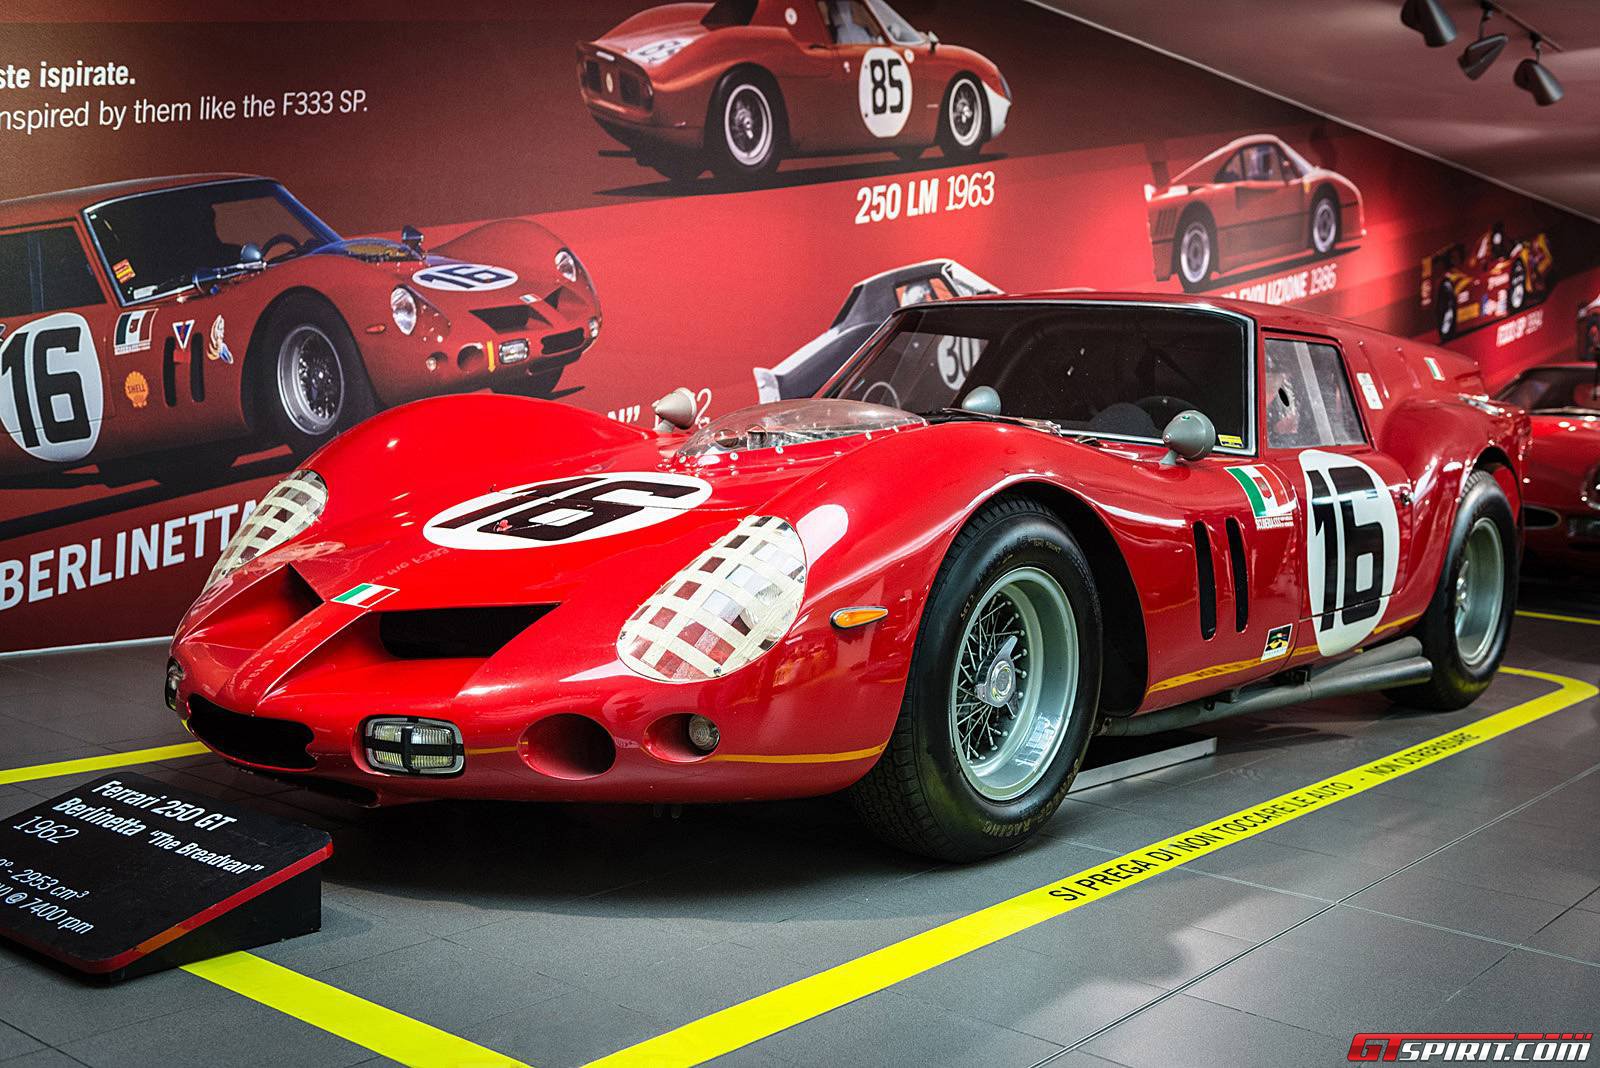 Choáng ngợp với Viện bảo tàng Ferrari tại Ý 2